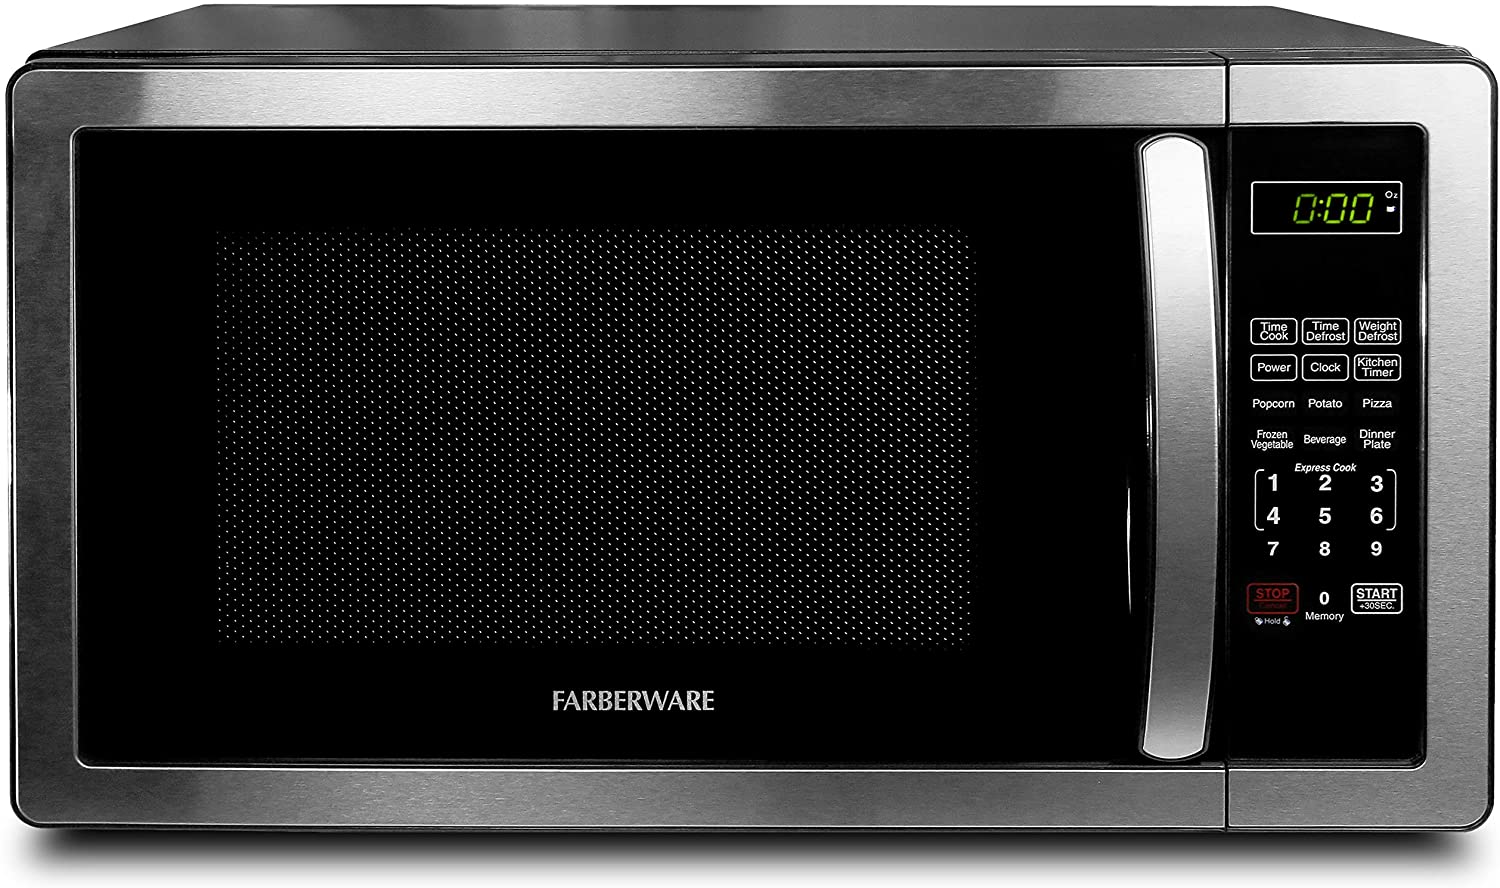 Farberware 1.1 Cu. Ft. Stainless Steel Countertop Microwave